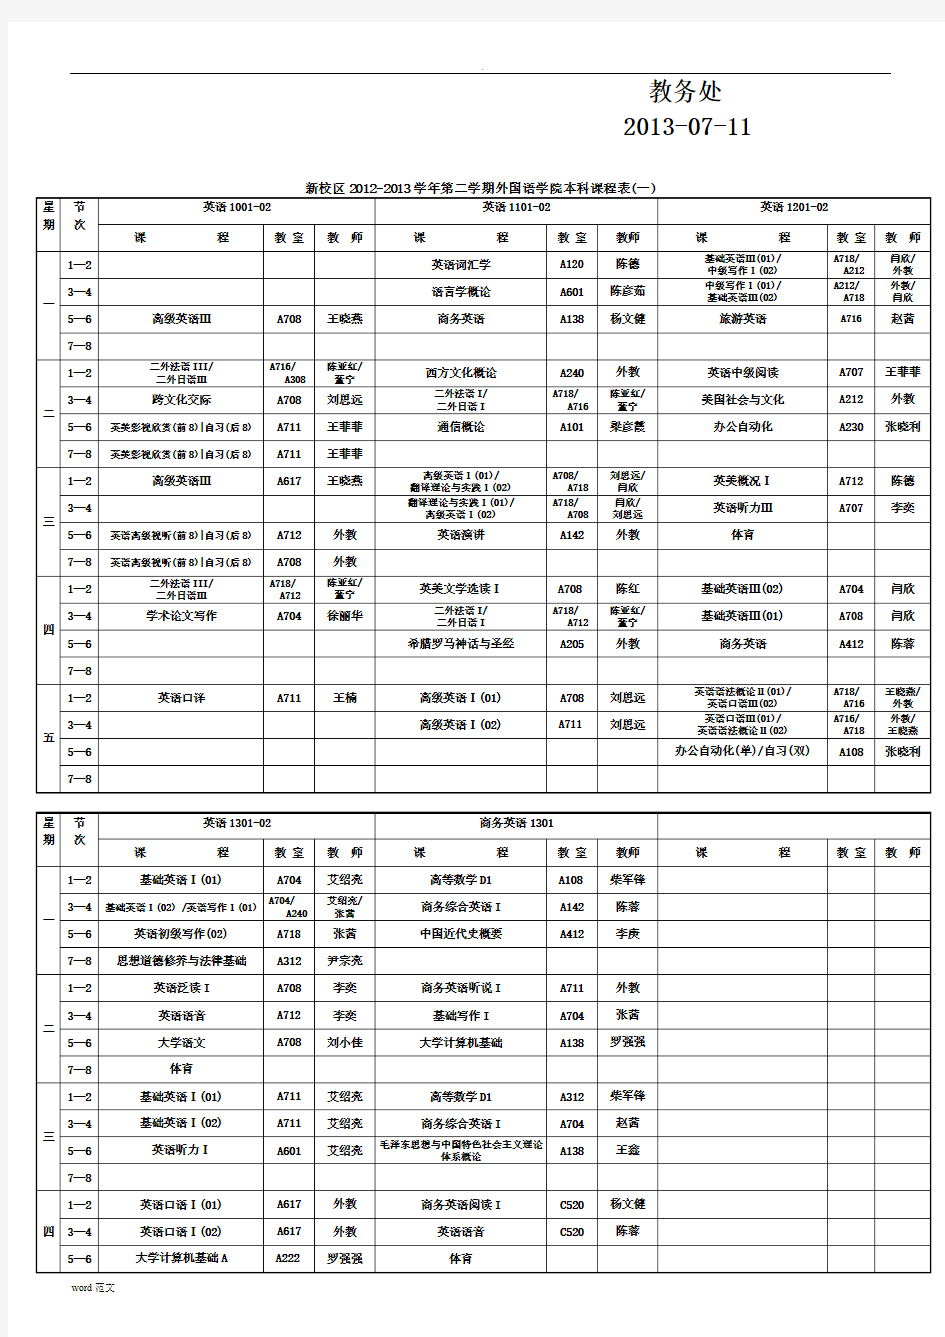 西安邮电大学新校区2013-2014-01学期课表